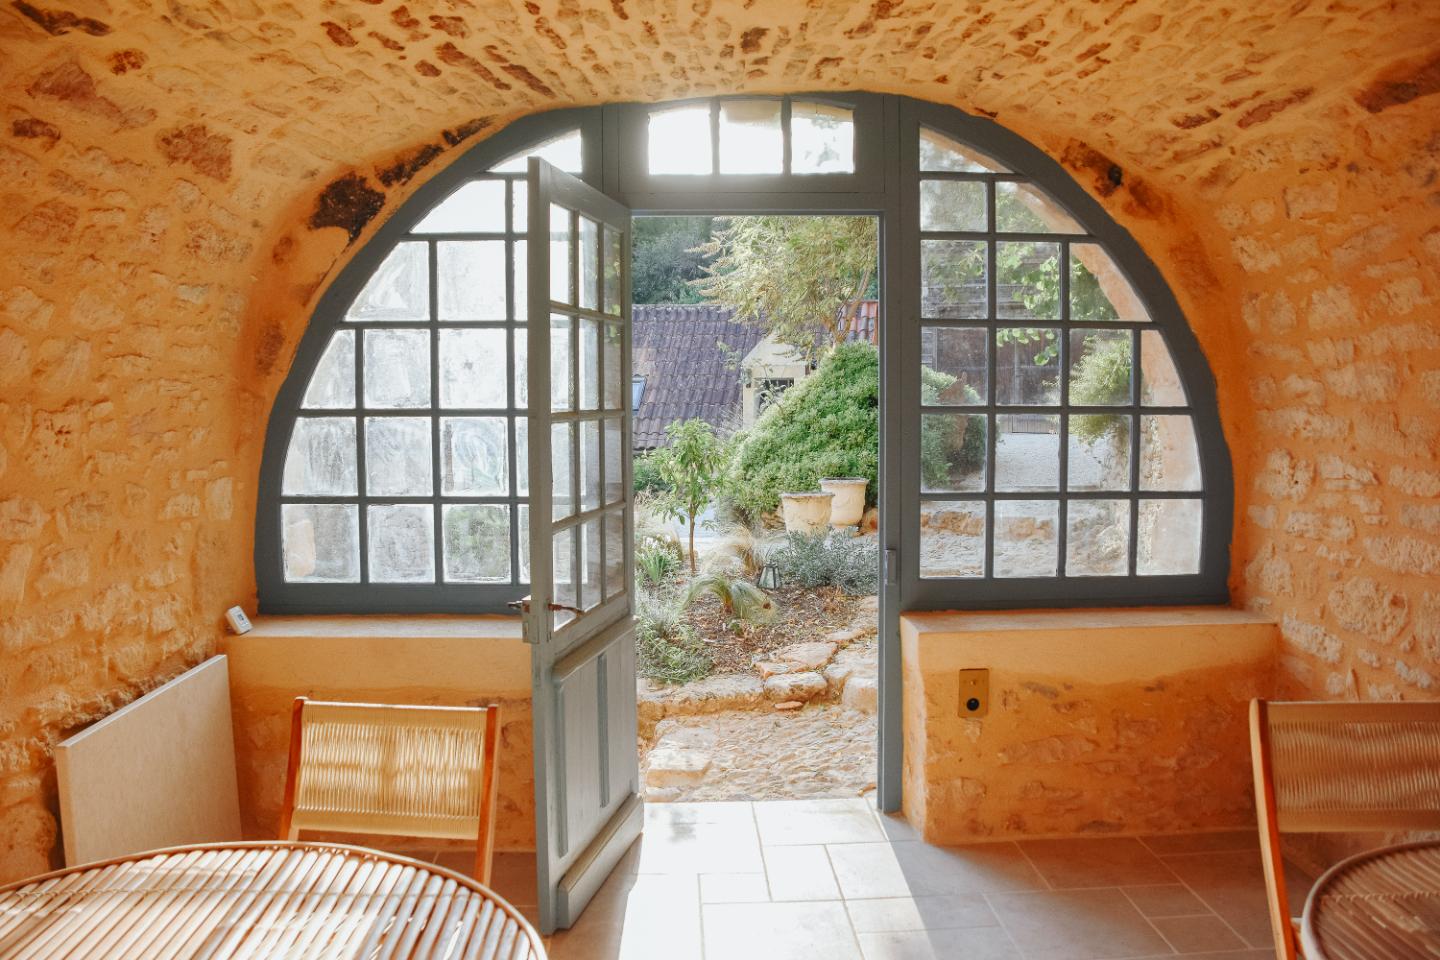 Hôte GreenGo: MAISON CISTUS - Maison d'hôtes de charme - Suites et gîte avec terrasses privées - Proche de Sarlat - Image 8